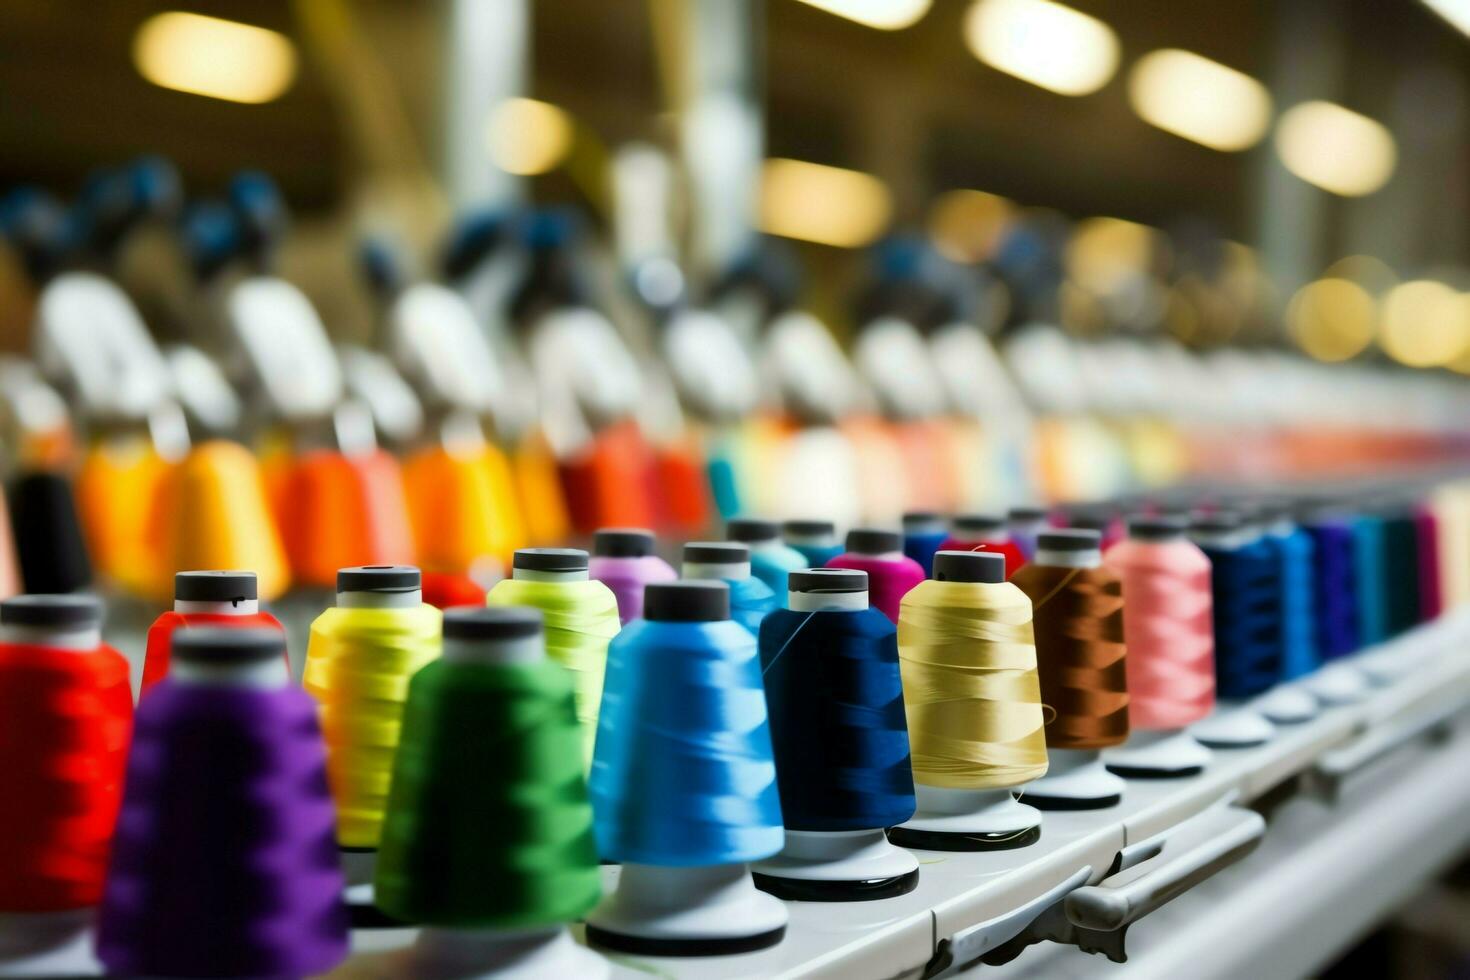 tessile stoffa fabbrica industria con ricamo macchina, maglieria o Filatura. cucire filo azienda concetto di ai generato foto